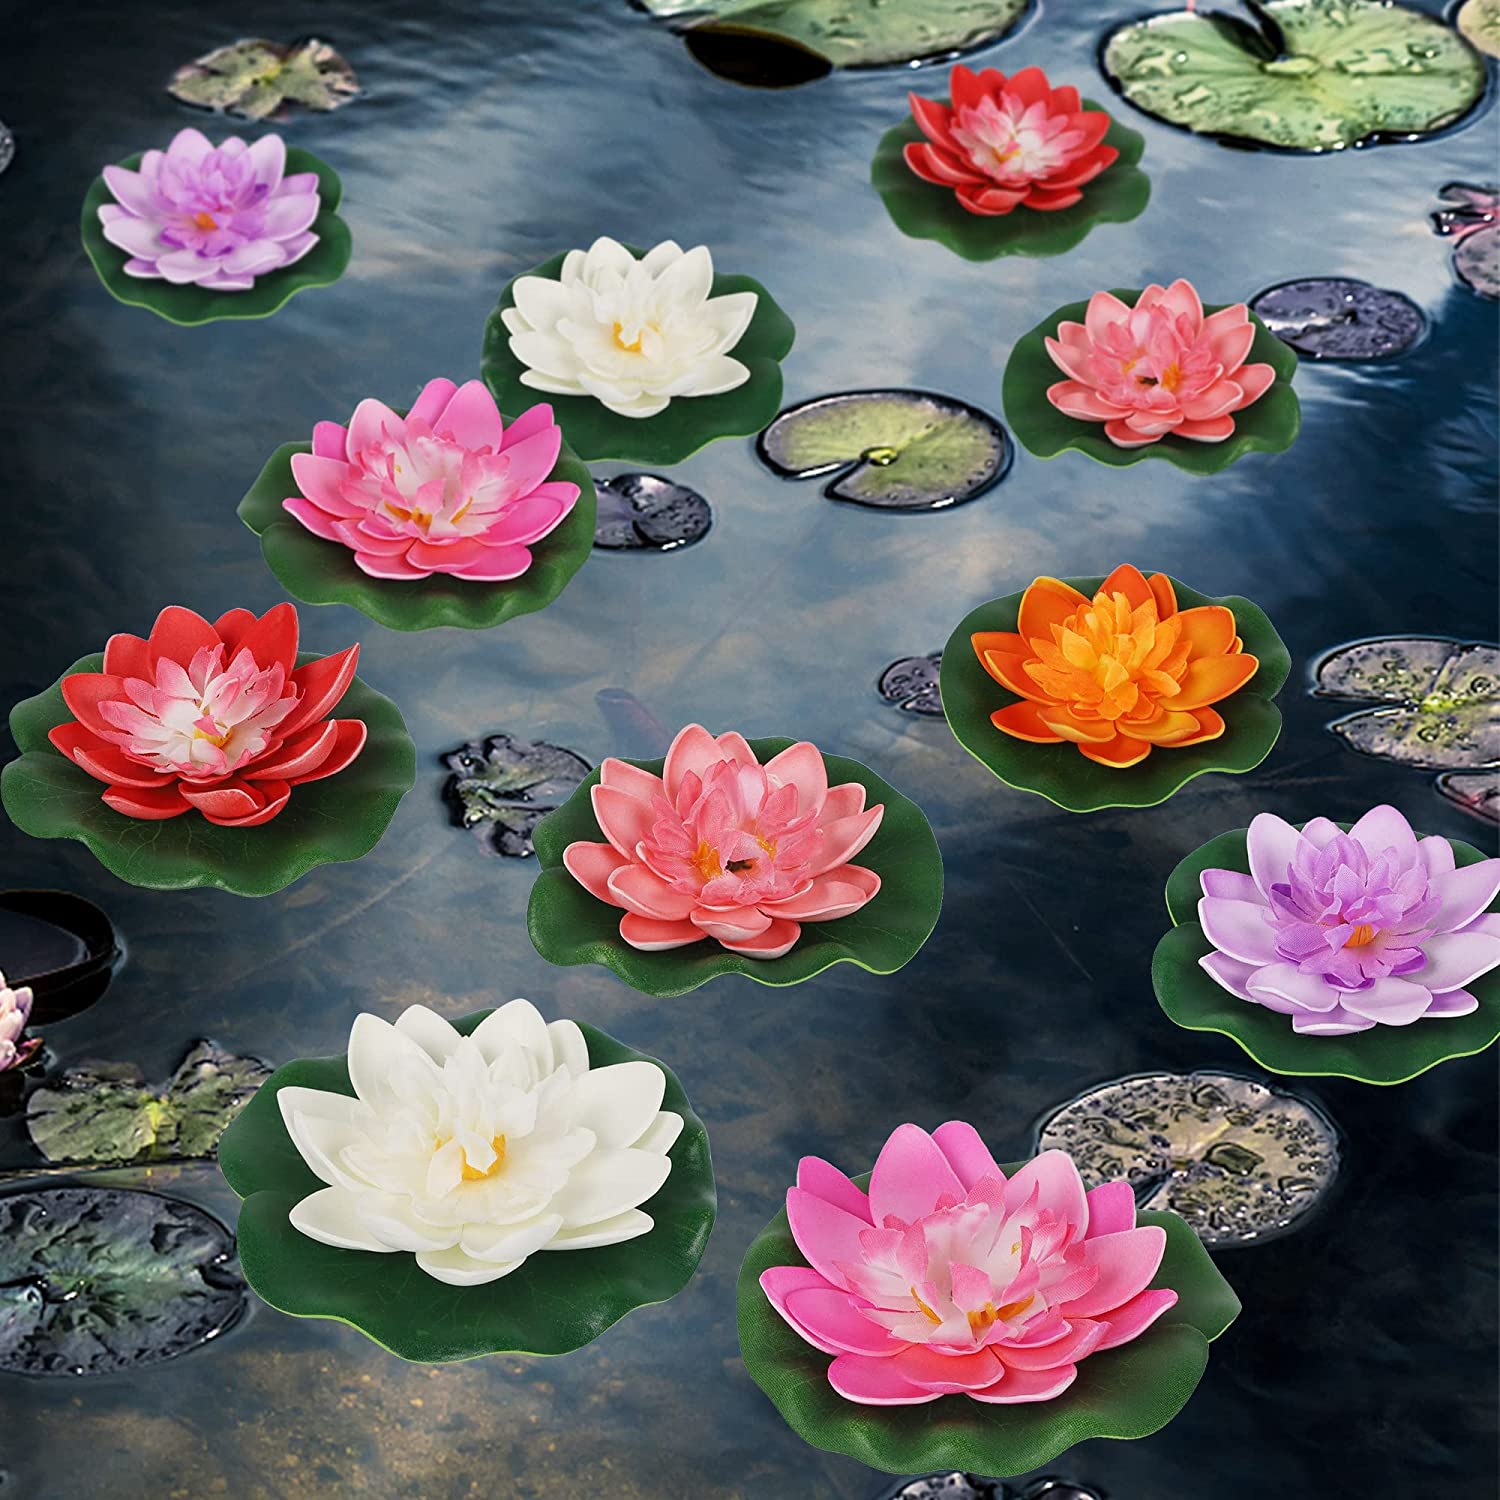 Spiritual Meaning of Lotus Flower